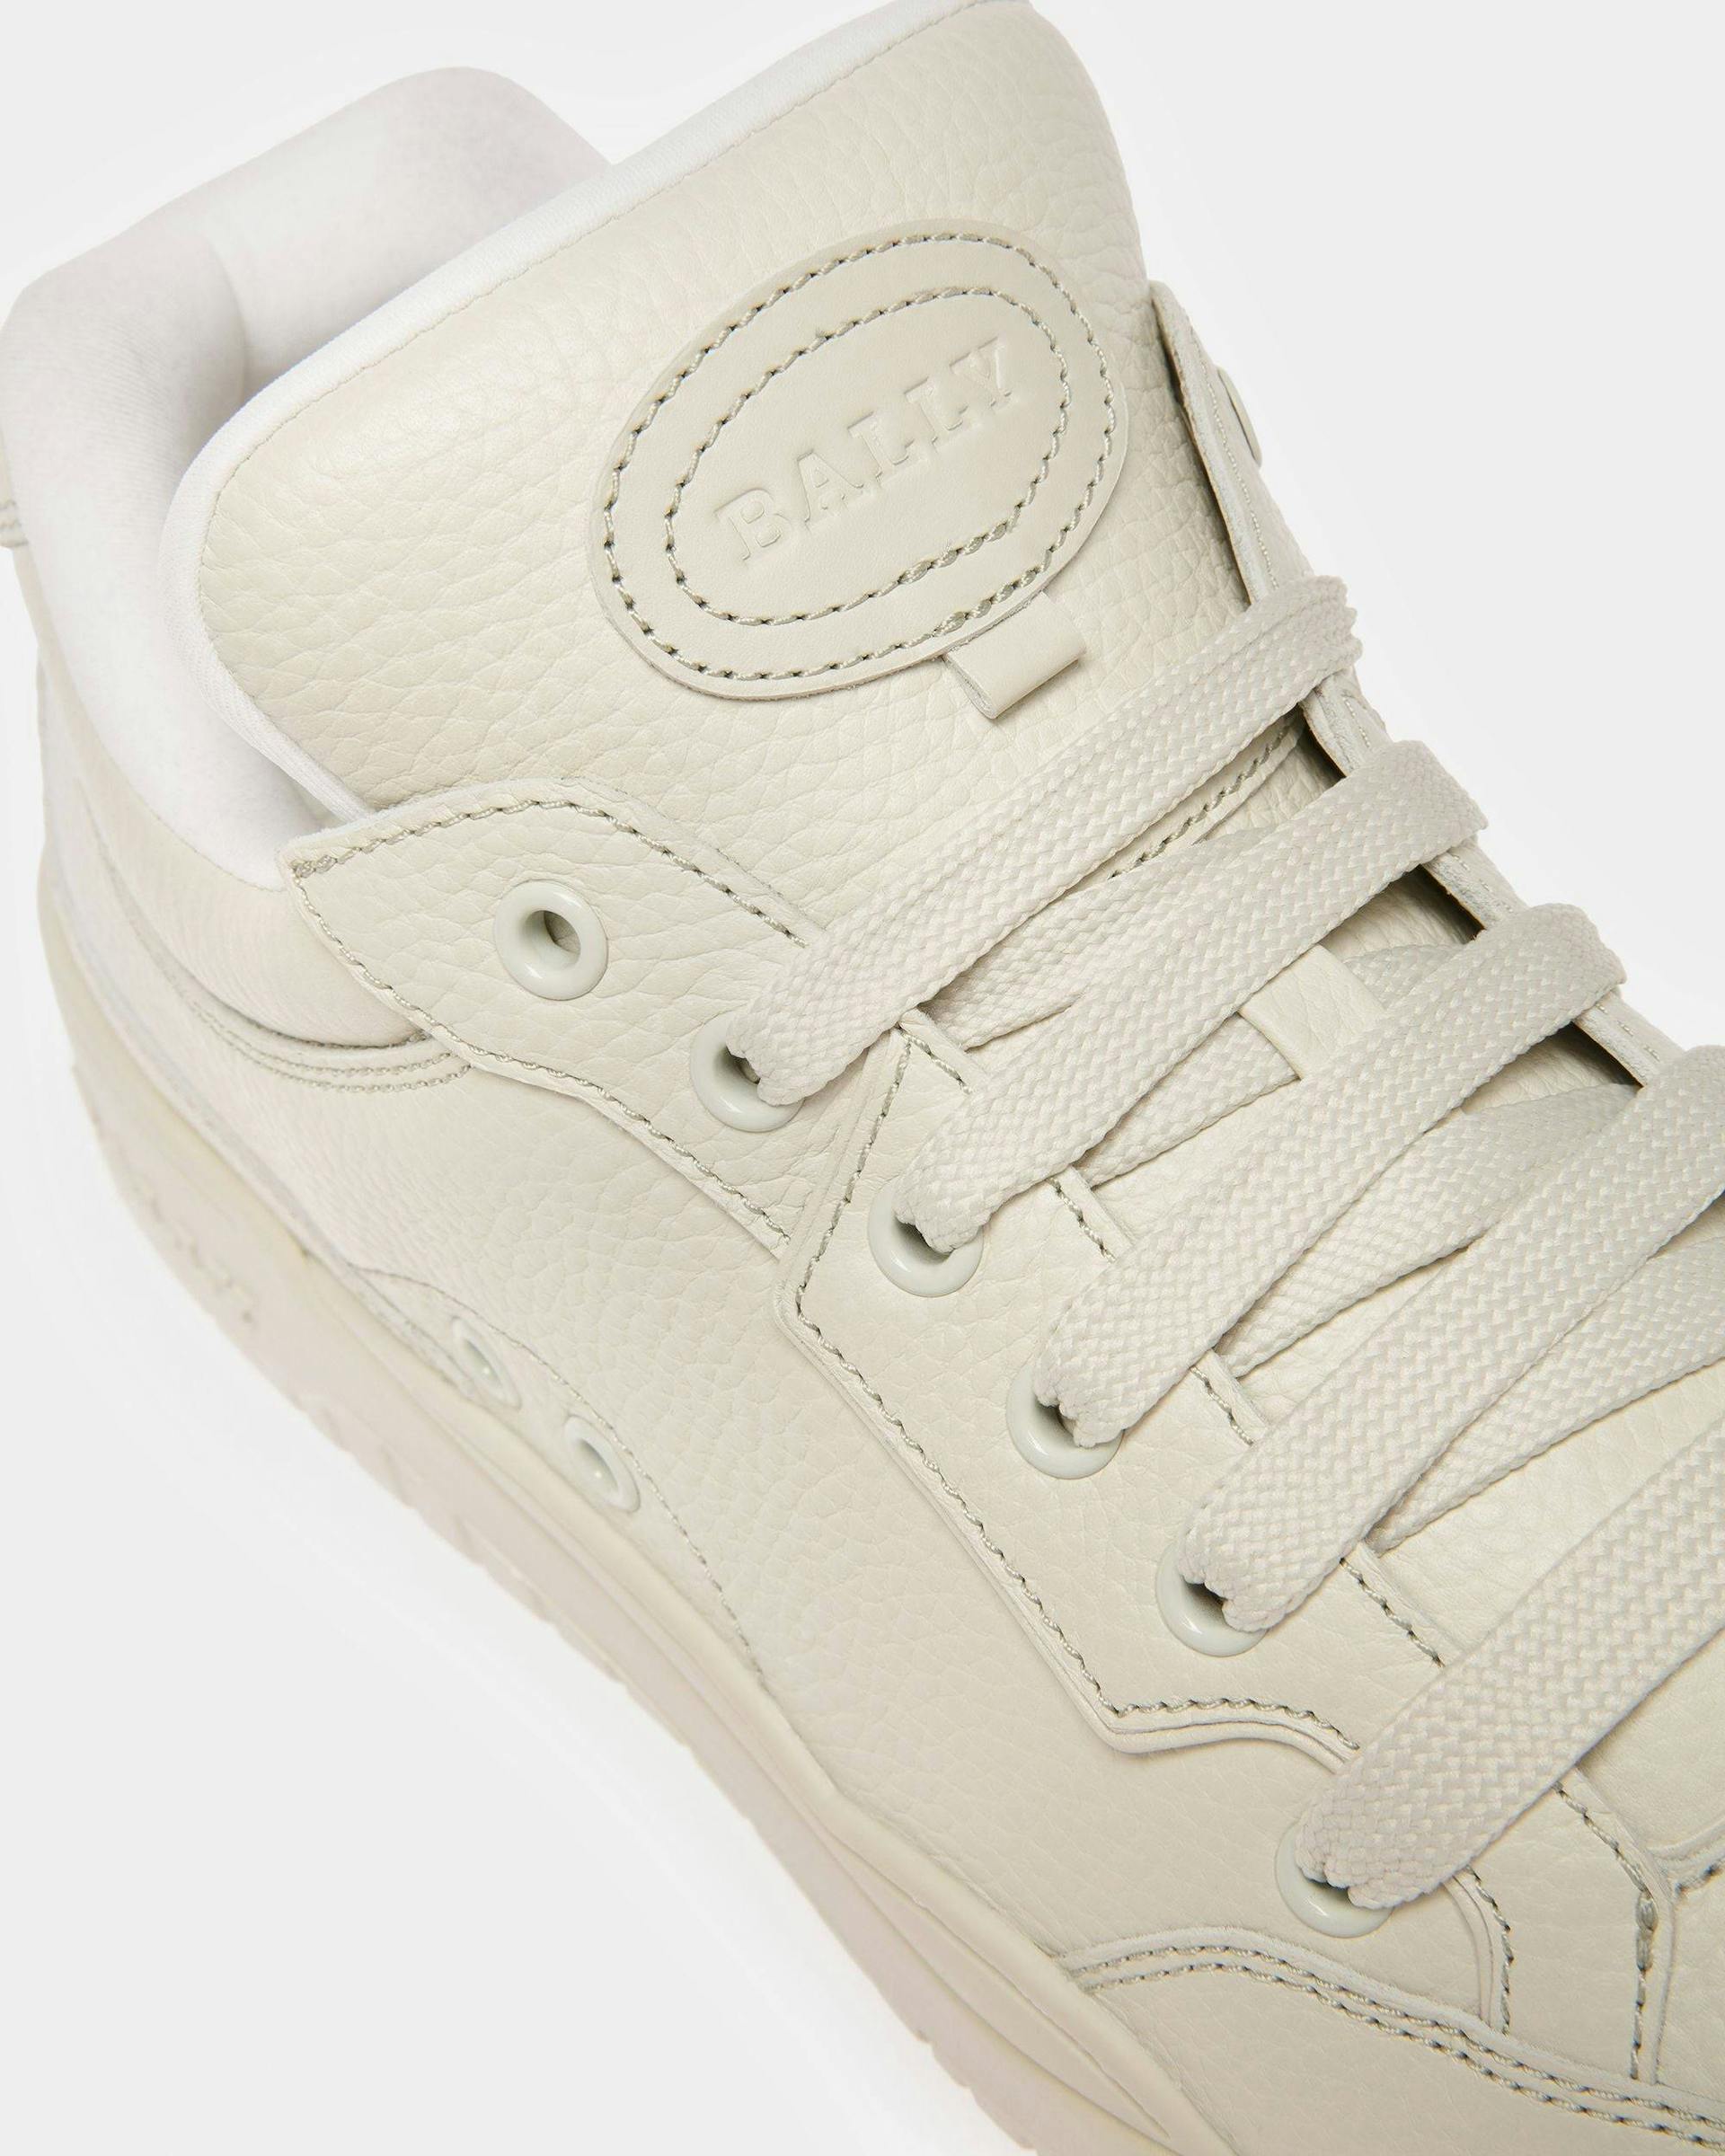 Kiro Leather Sneakers In Dusty White - Men's - Bally - 06